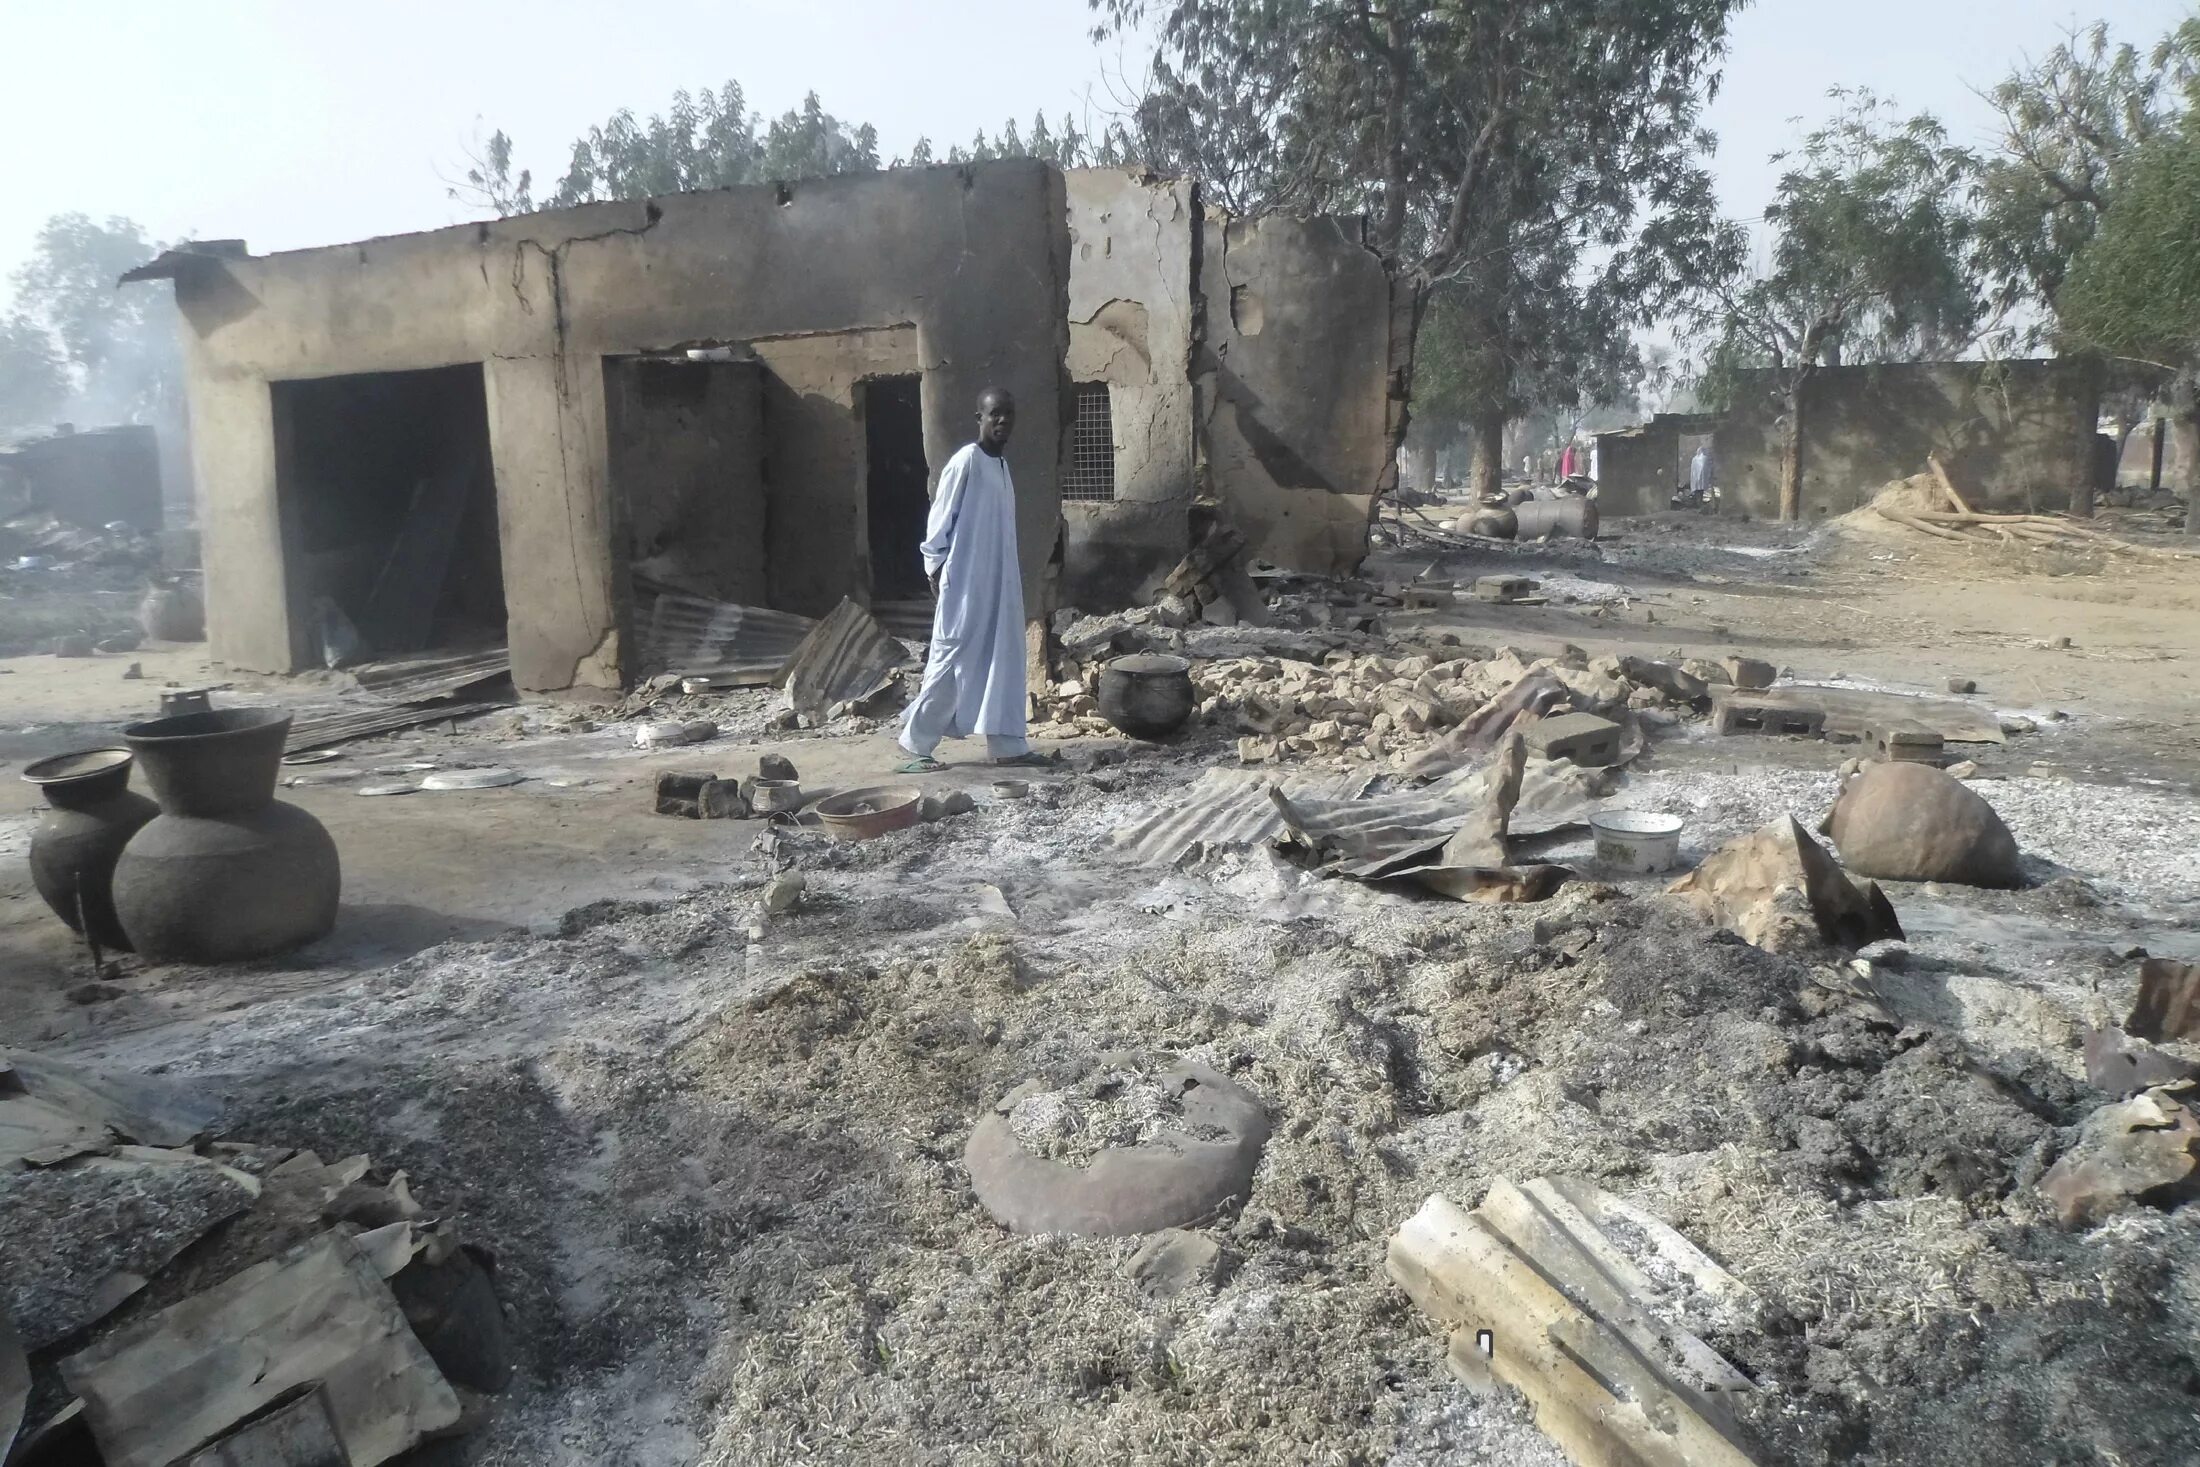 Атака Боко-харам в Нигерии. Более 300 погибших. Атака Боко-харам в Нигерии теракт. Атака Боко-харам в Нигерии 5-6 мая 2014. Атака Боко-харам 6 мая 2014.